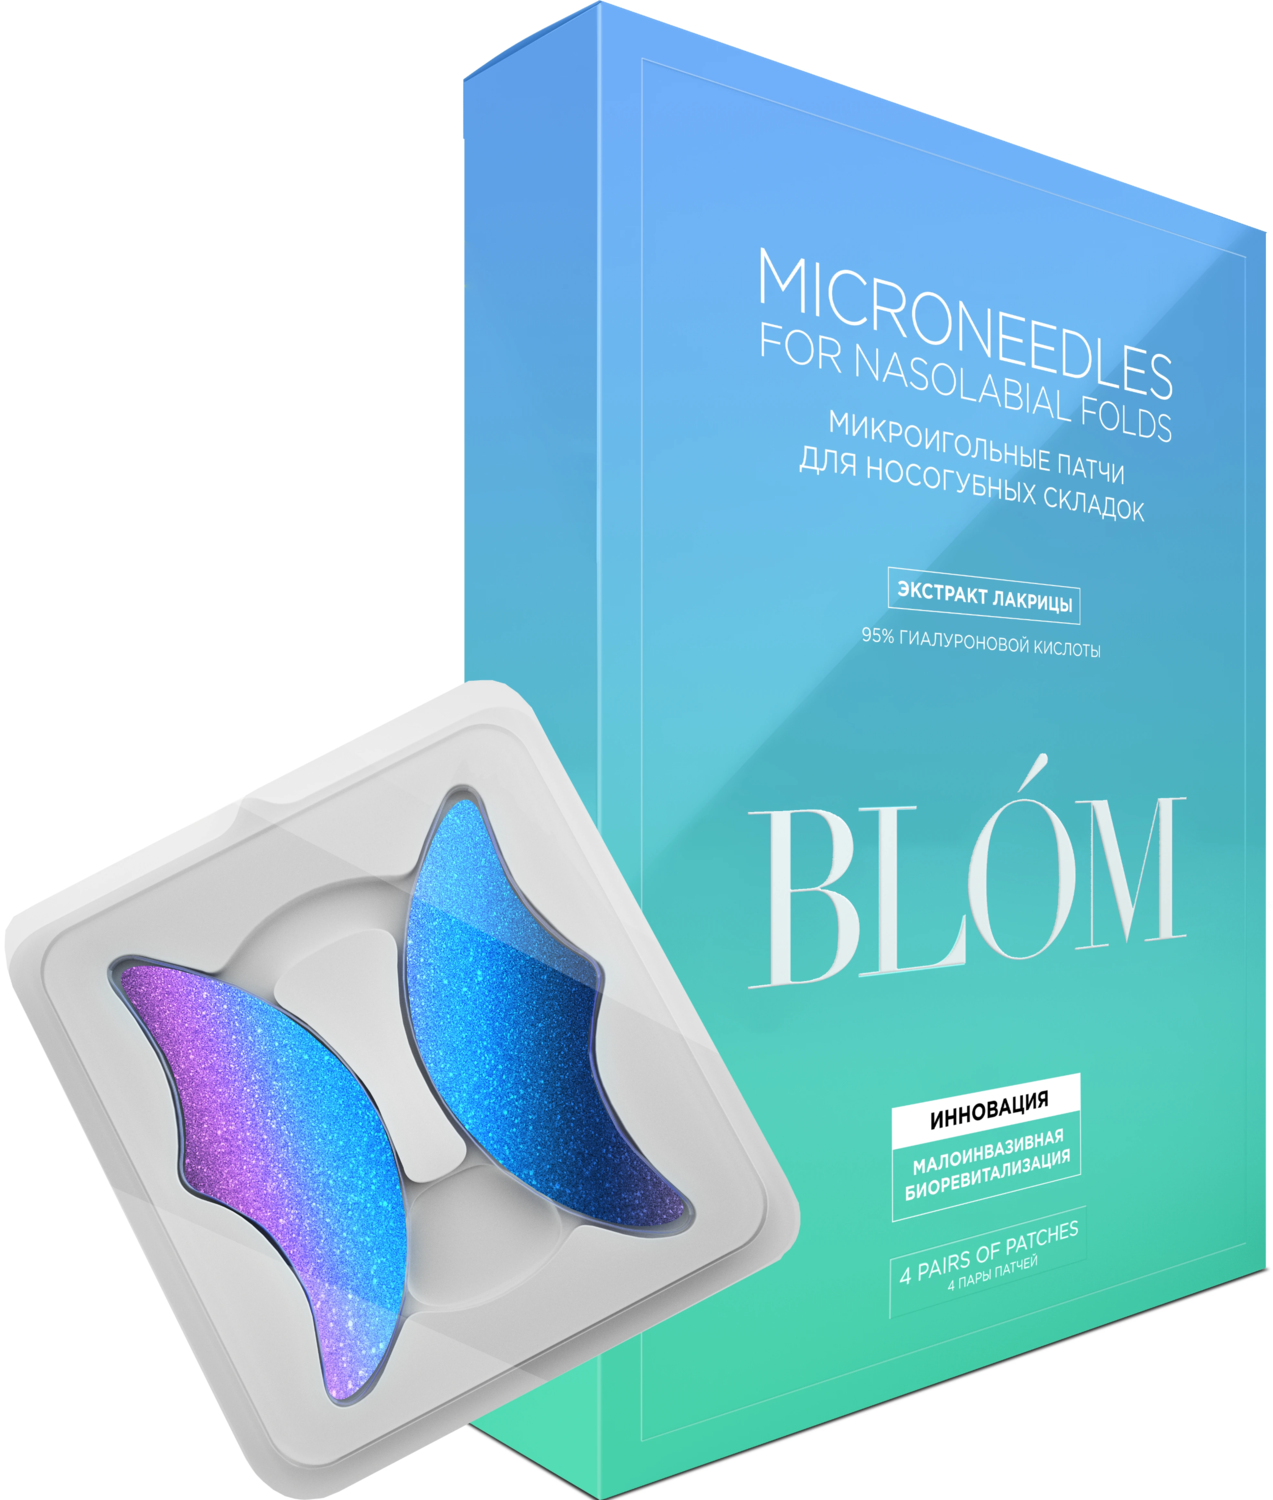 Blom Microneedle For Nasolabial Folds Блум икроигольные патчи для носогубных складок с экстрактом лакрицы